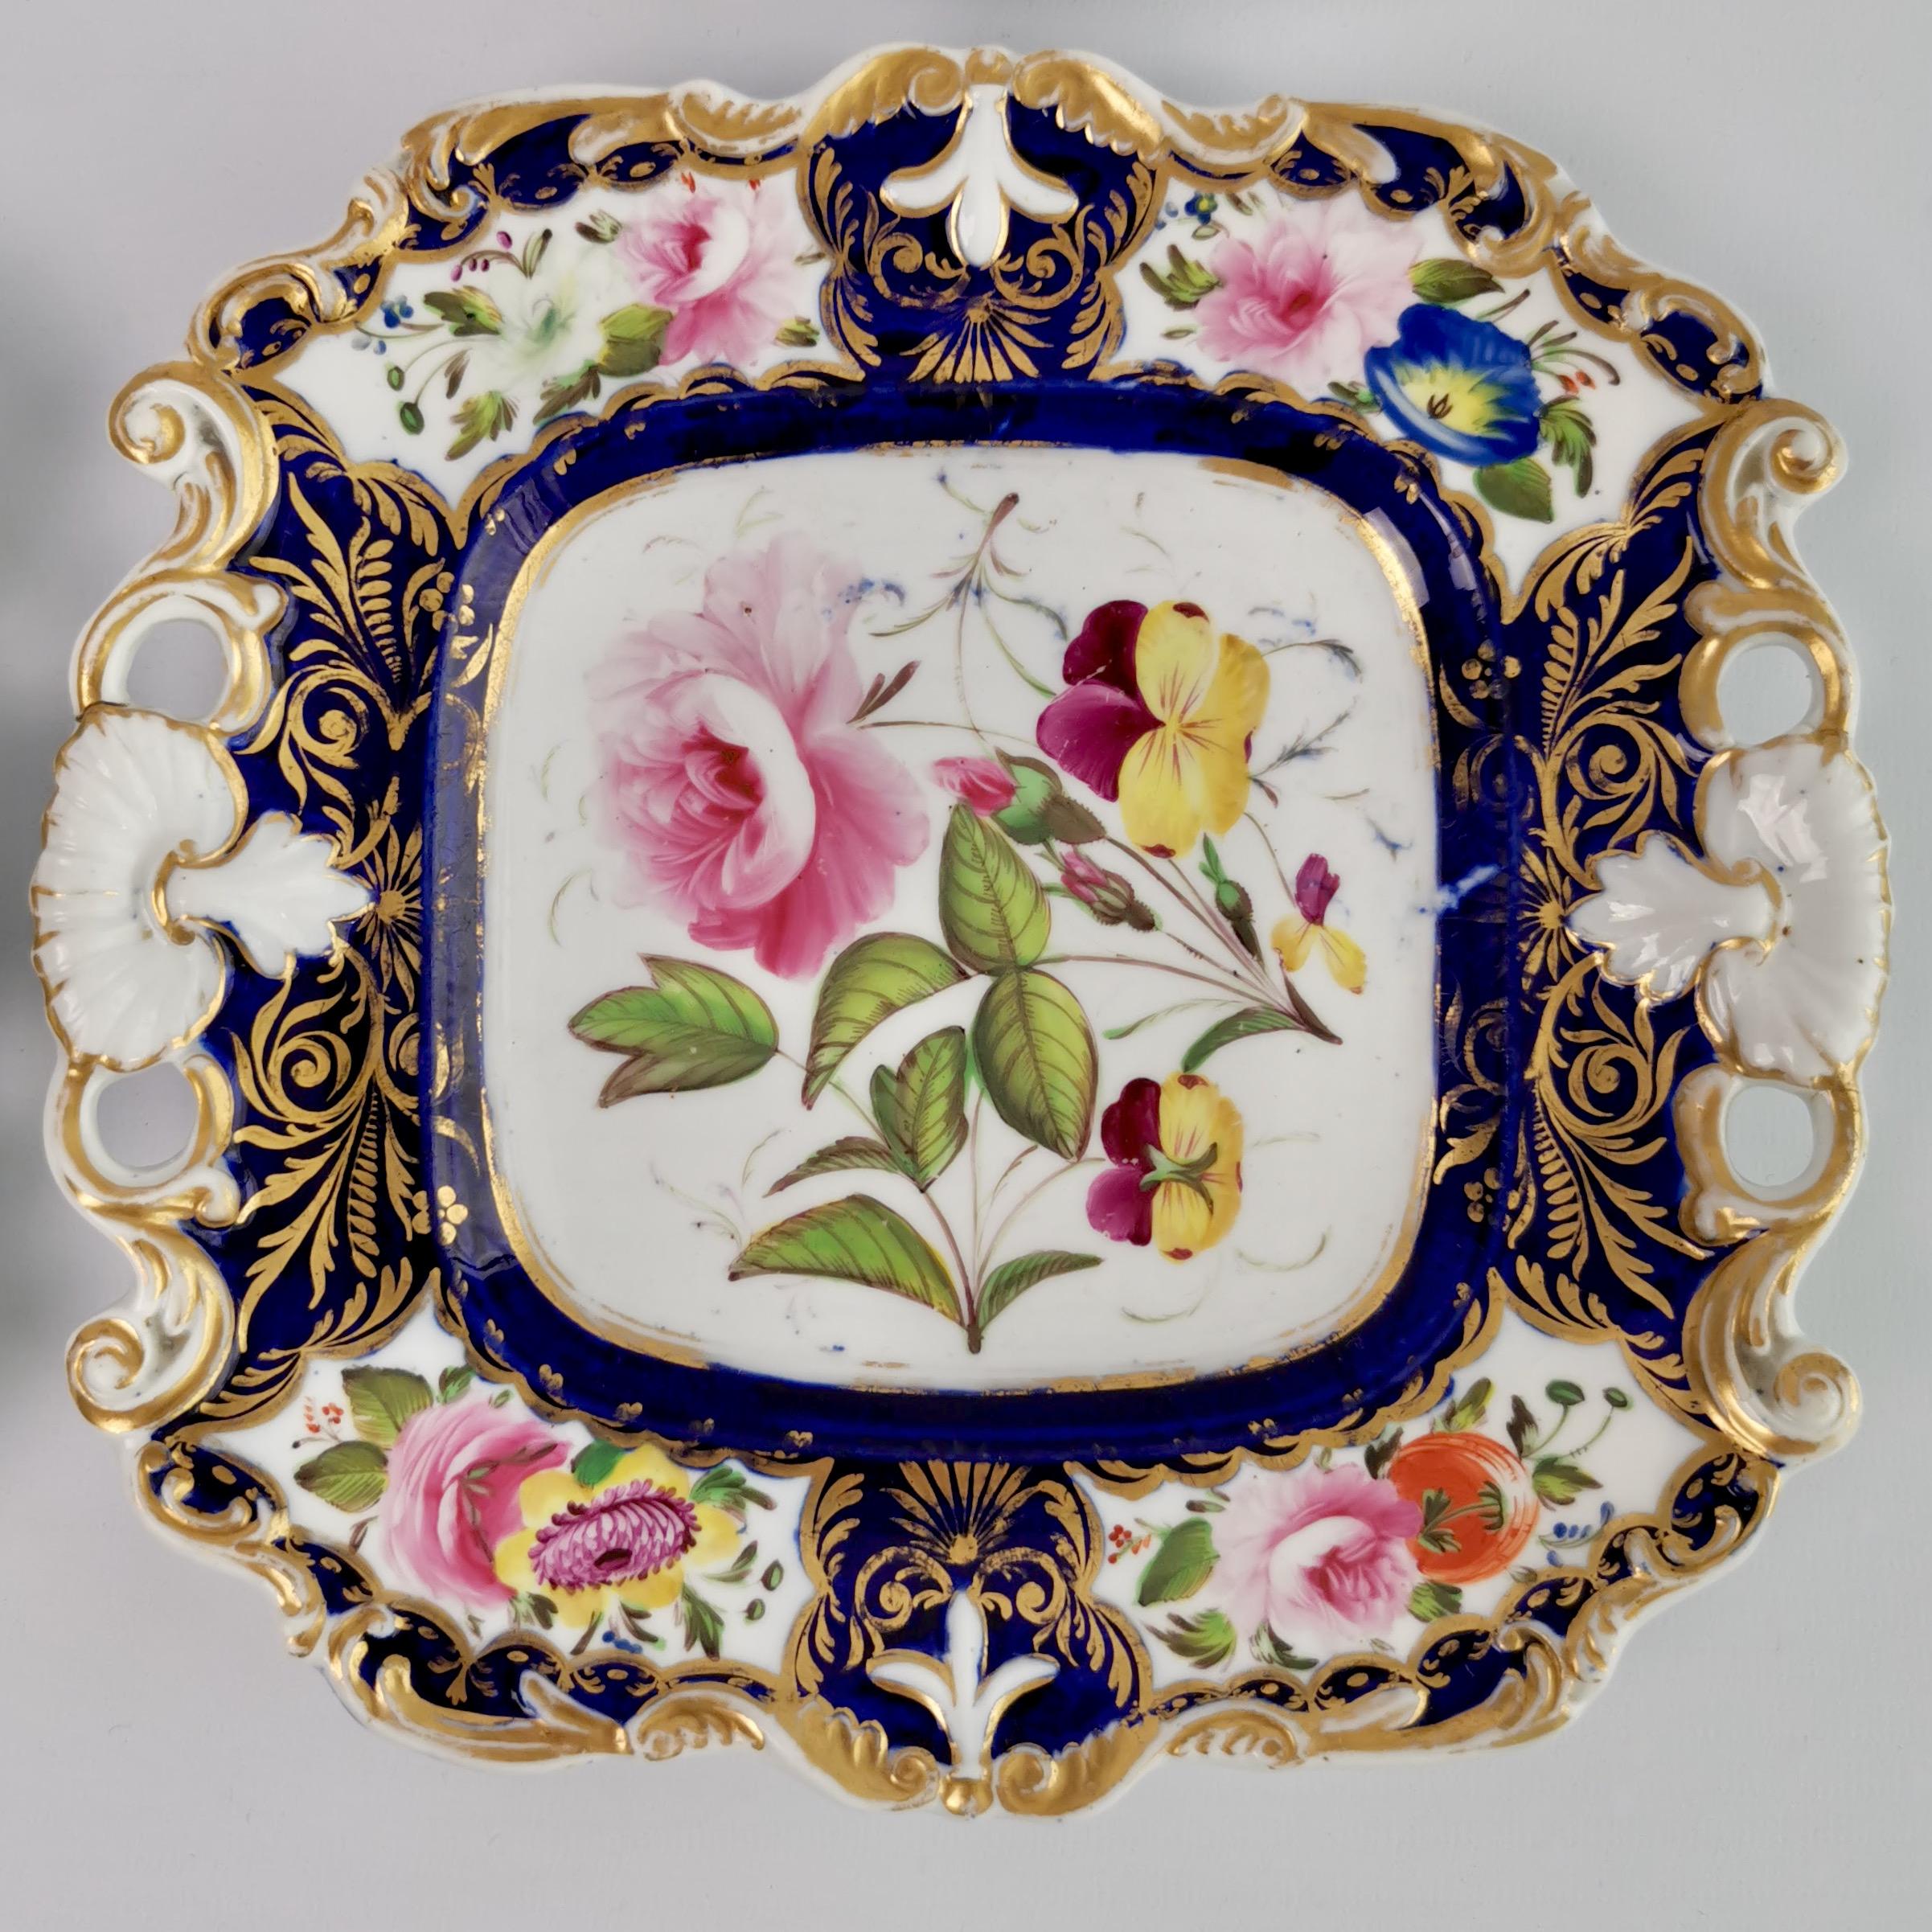 New Hall Porcelain Dessert Service, Cobalt Blue with Flowers, Regency 1824-1830 5